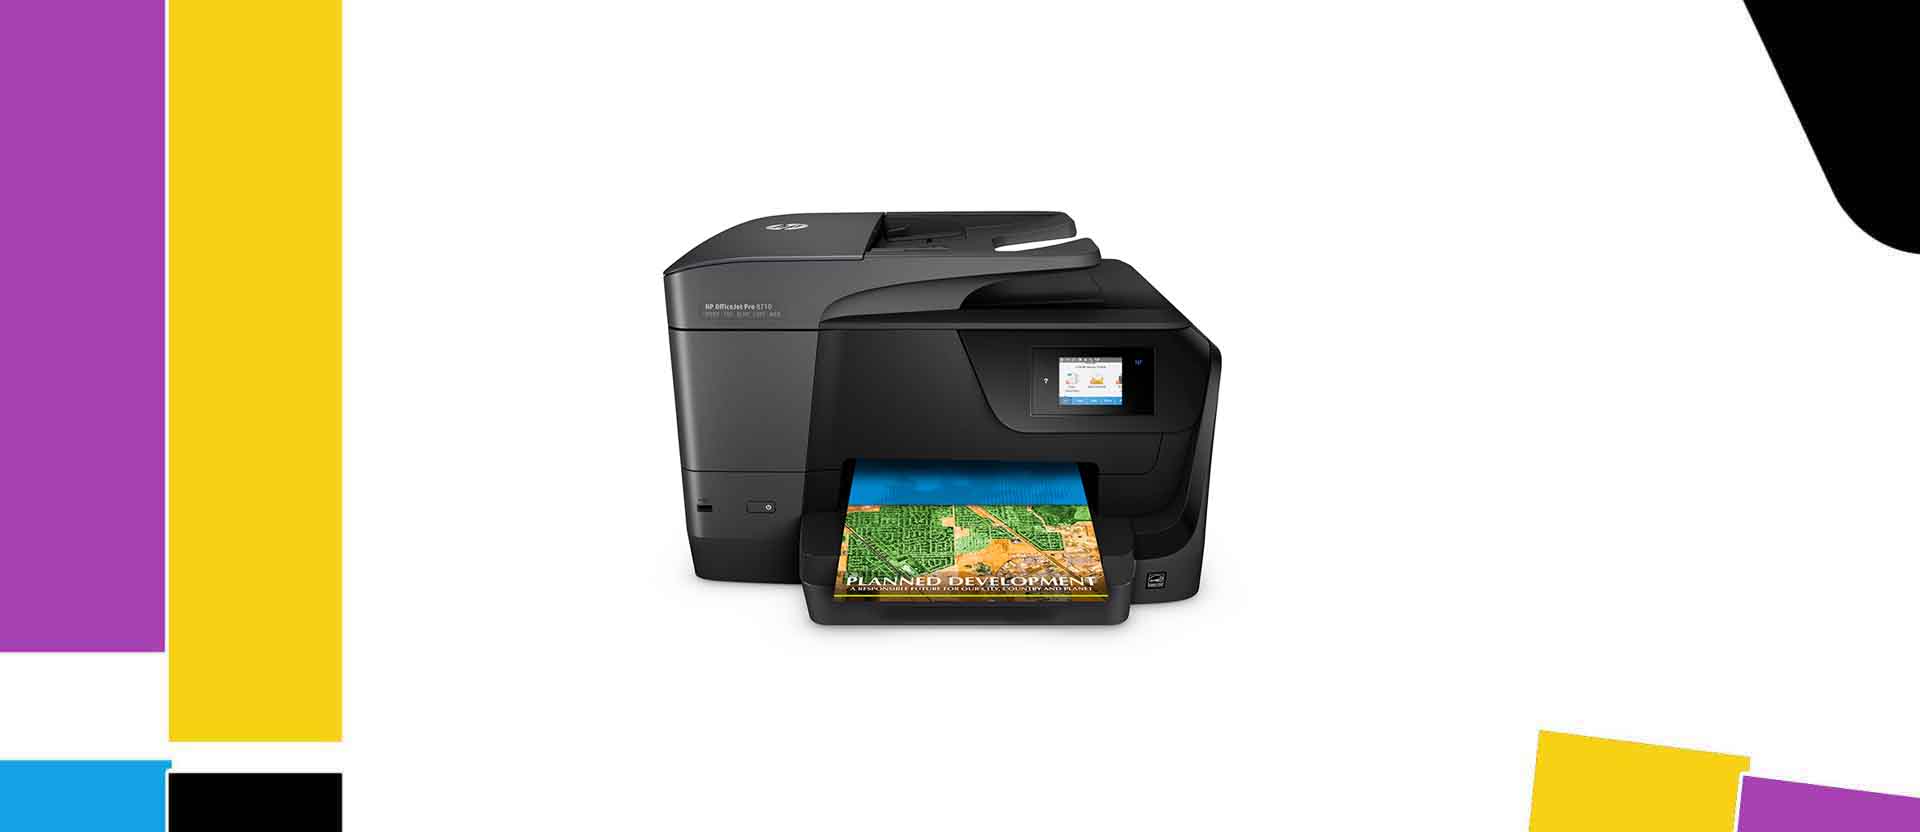 Best HP Officejet Pro 8710 Printer Ink Cartridge